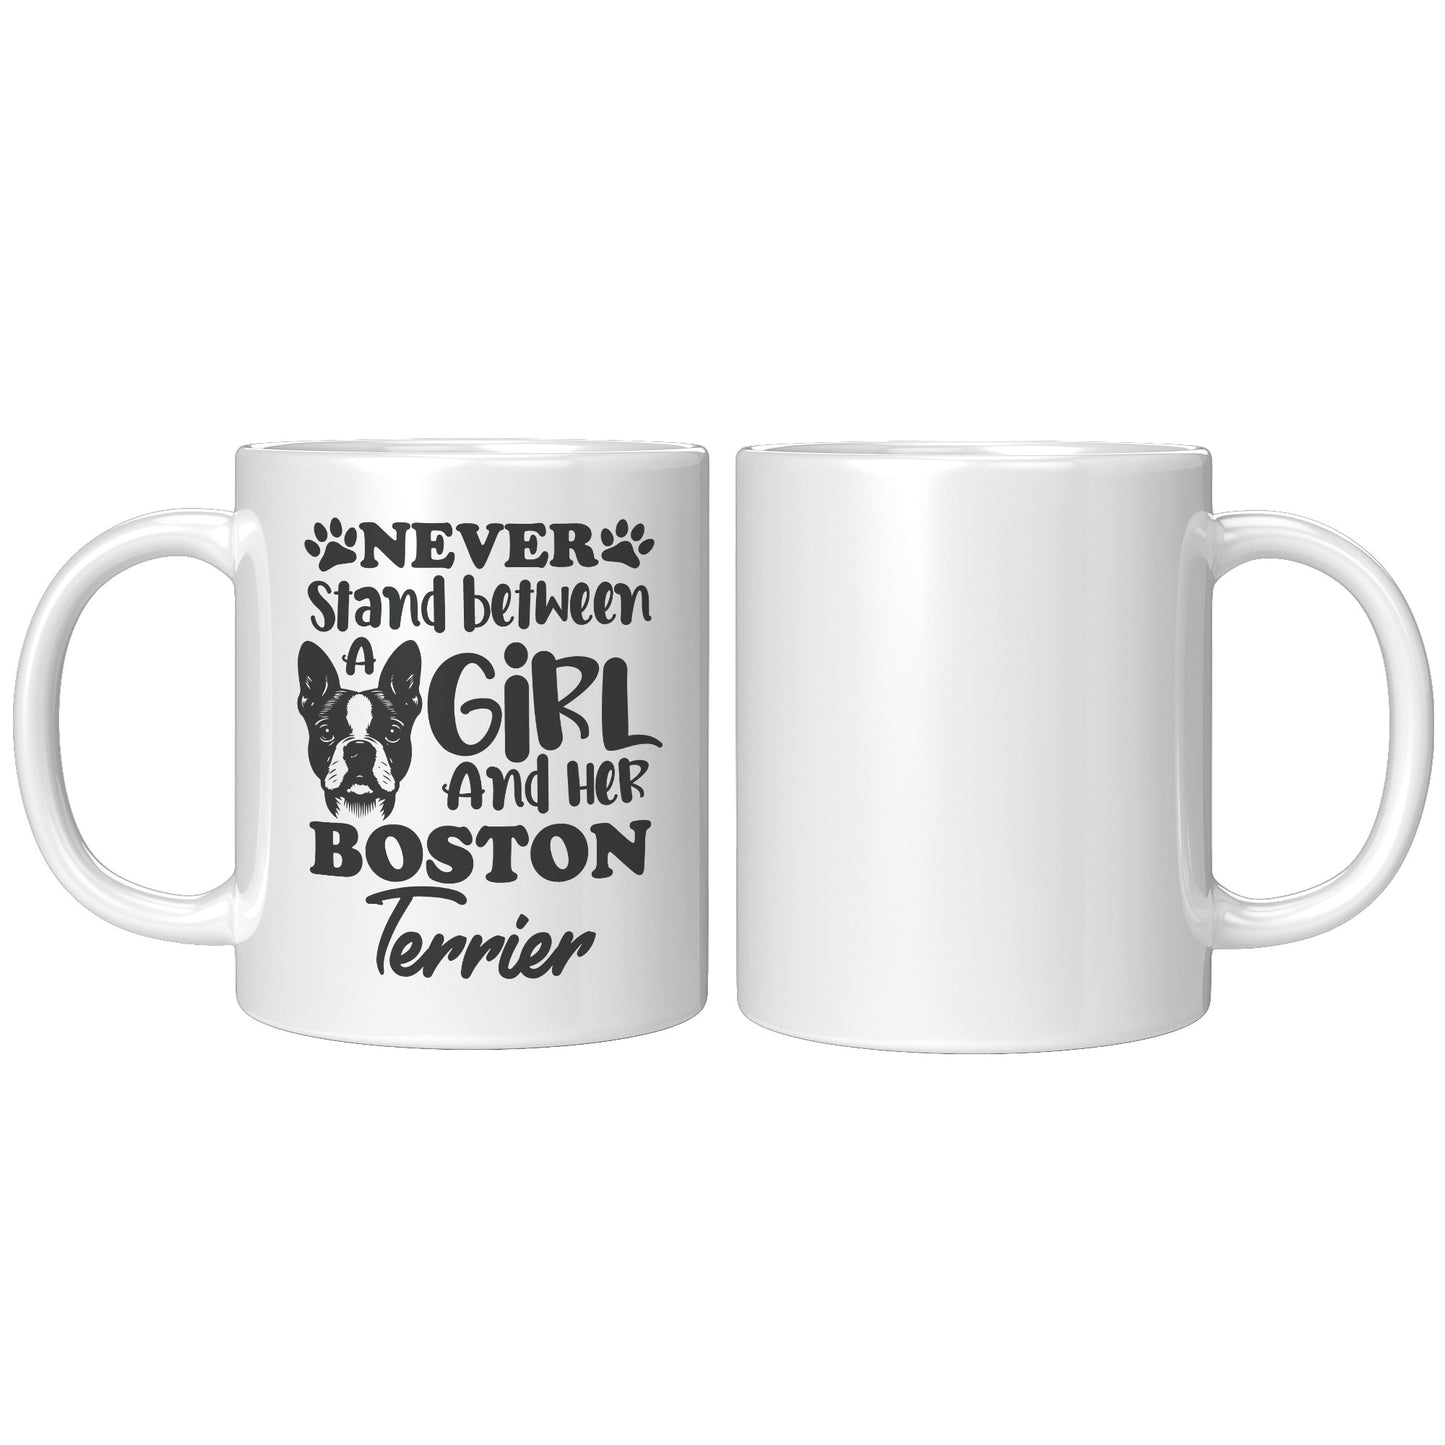 Reginald-Mug for Boston Terrier lovers